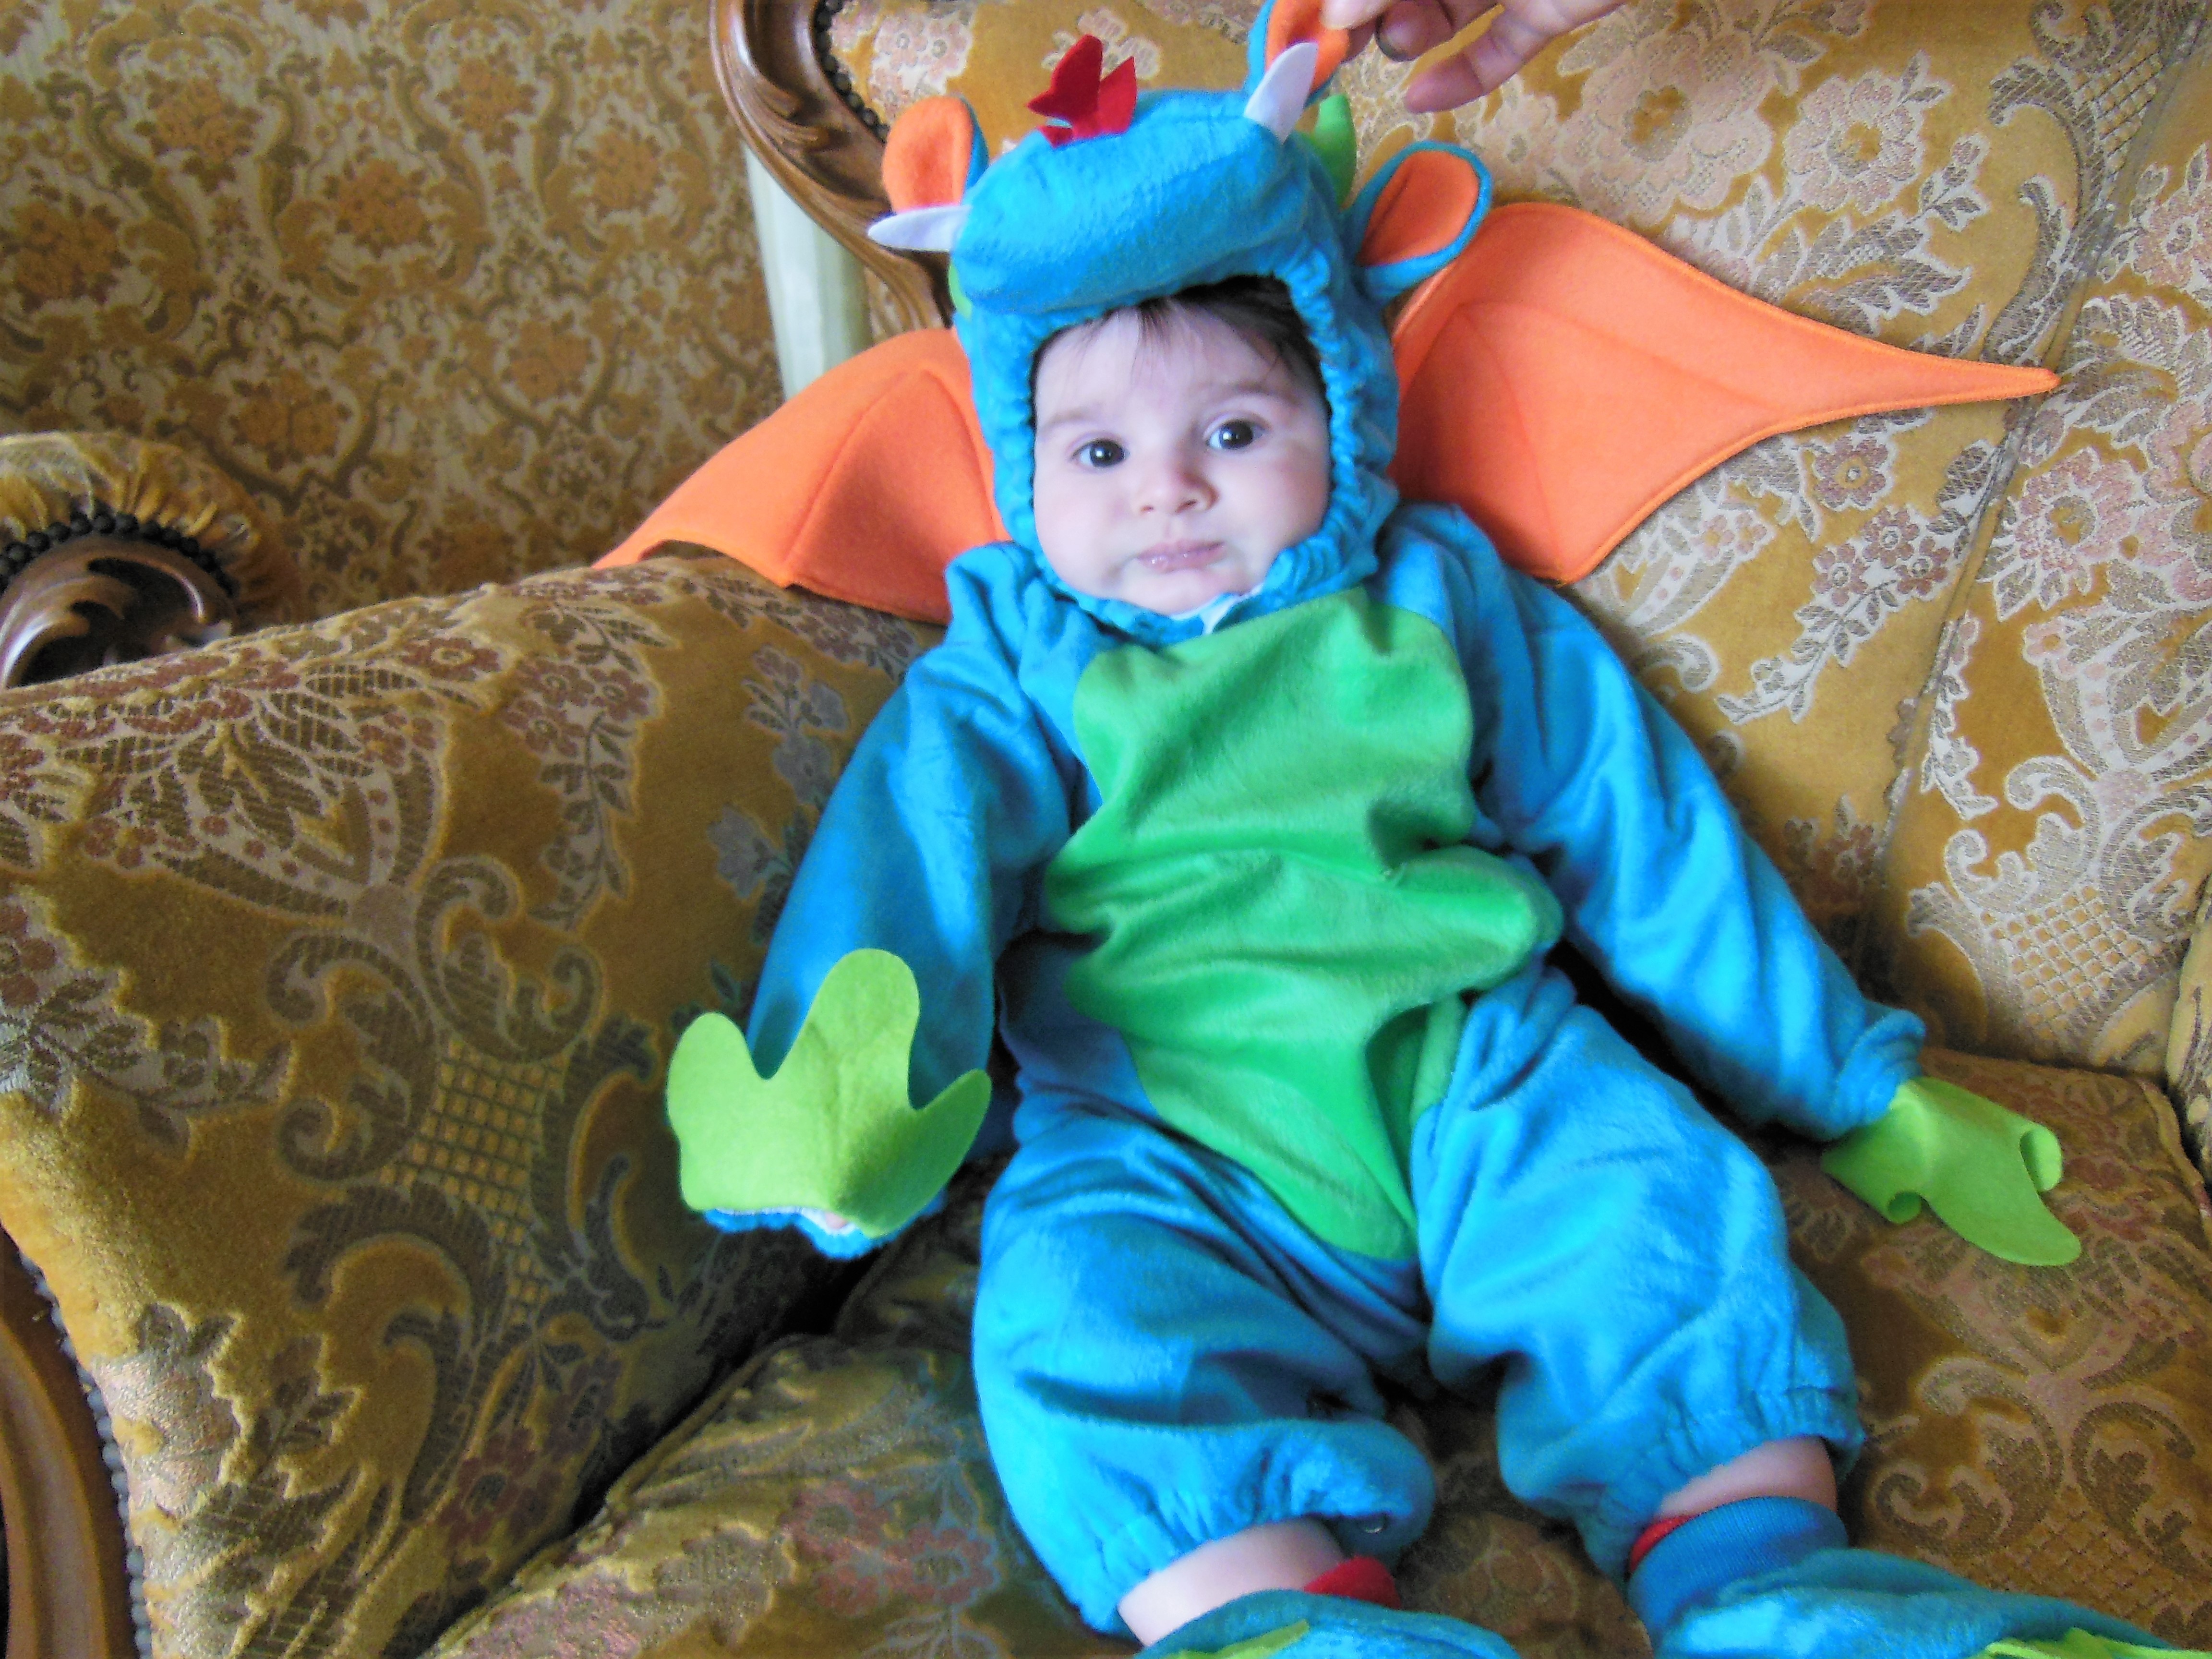 I migliori costumi di carnevale per neonati - A Spasso con Bea